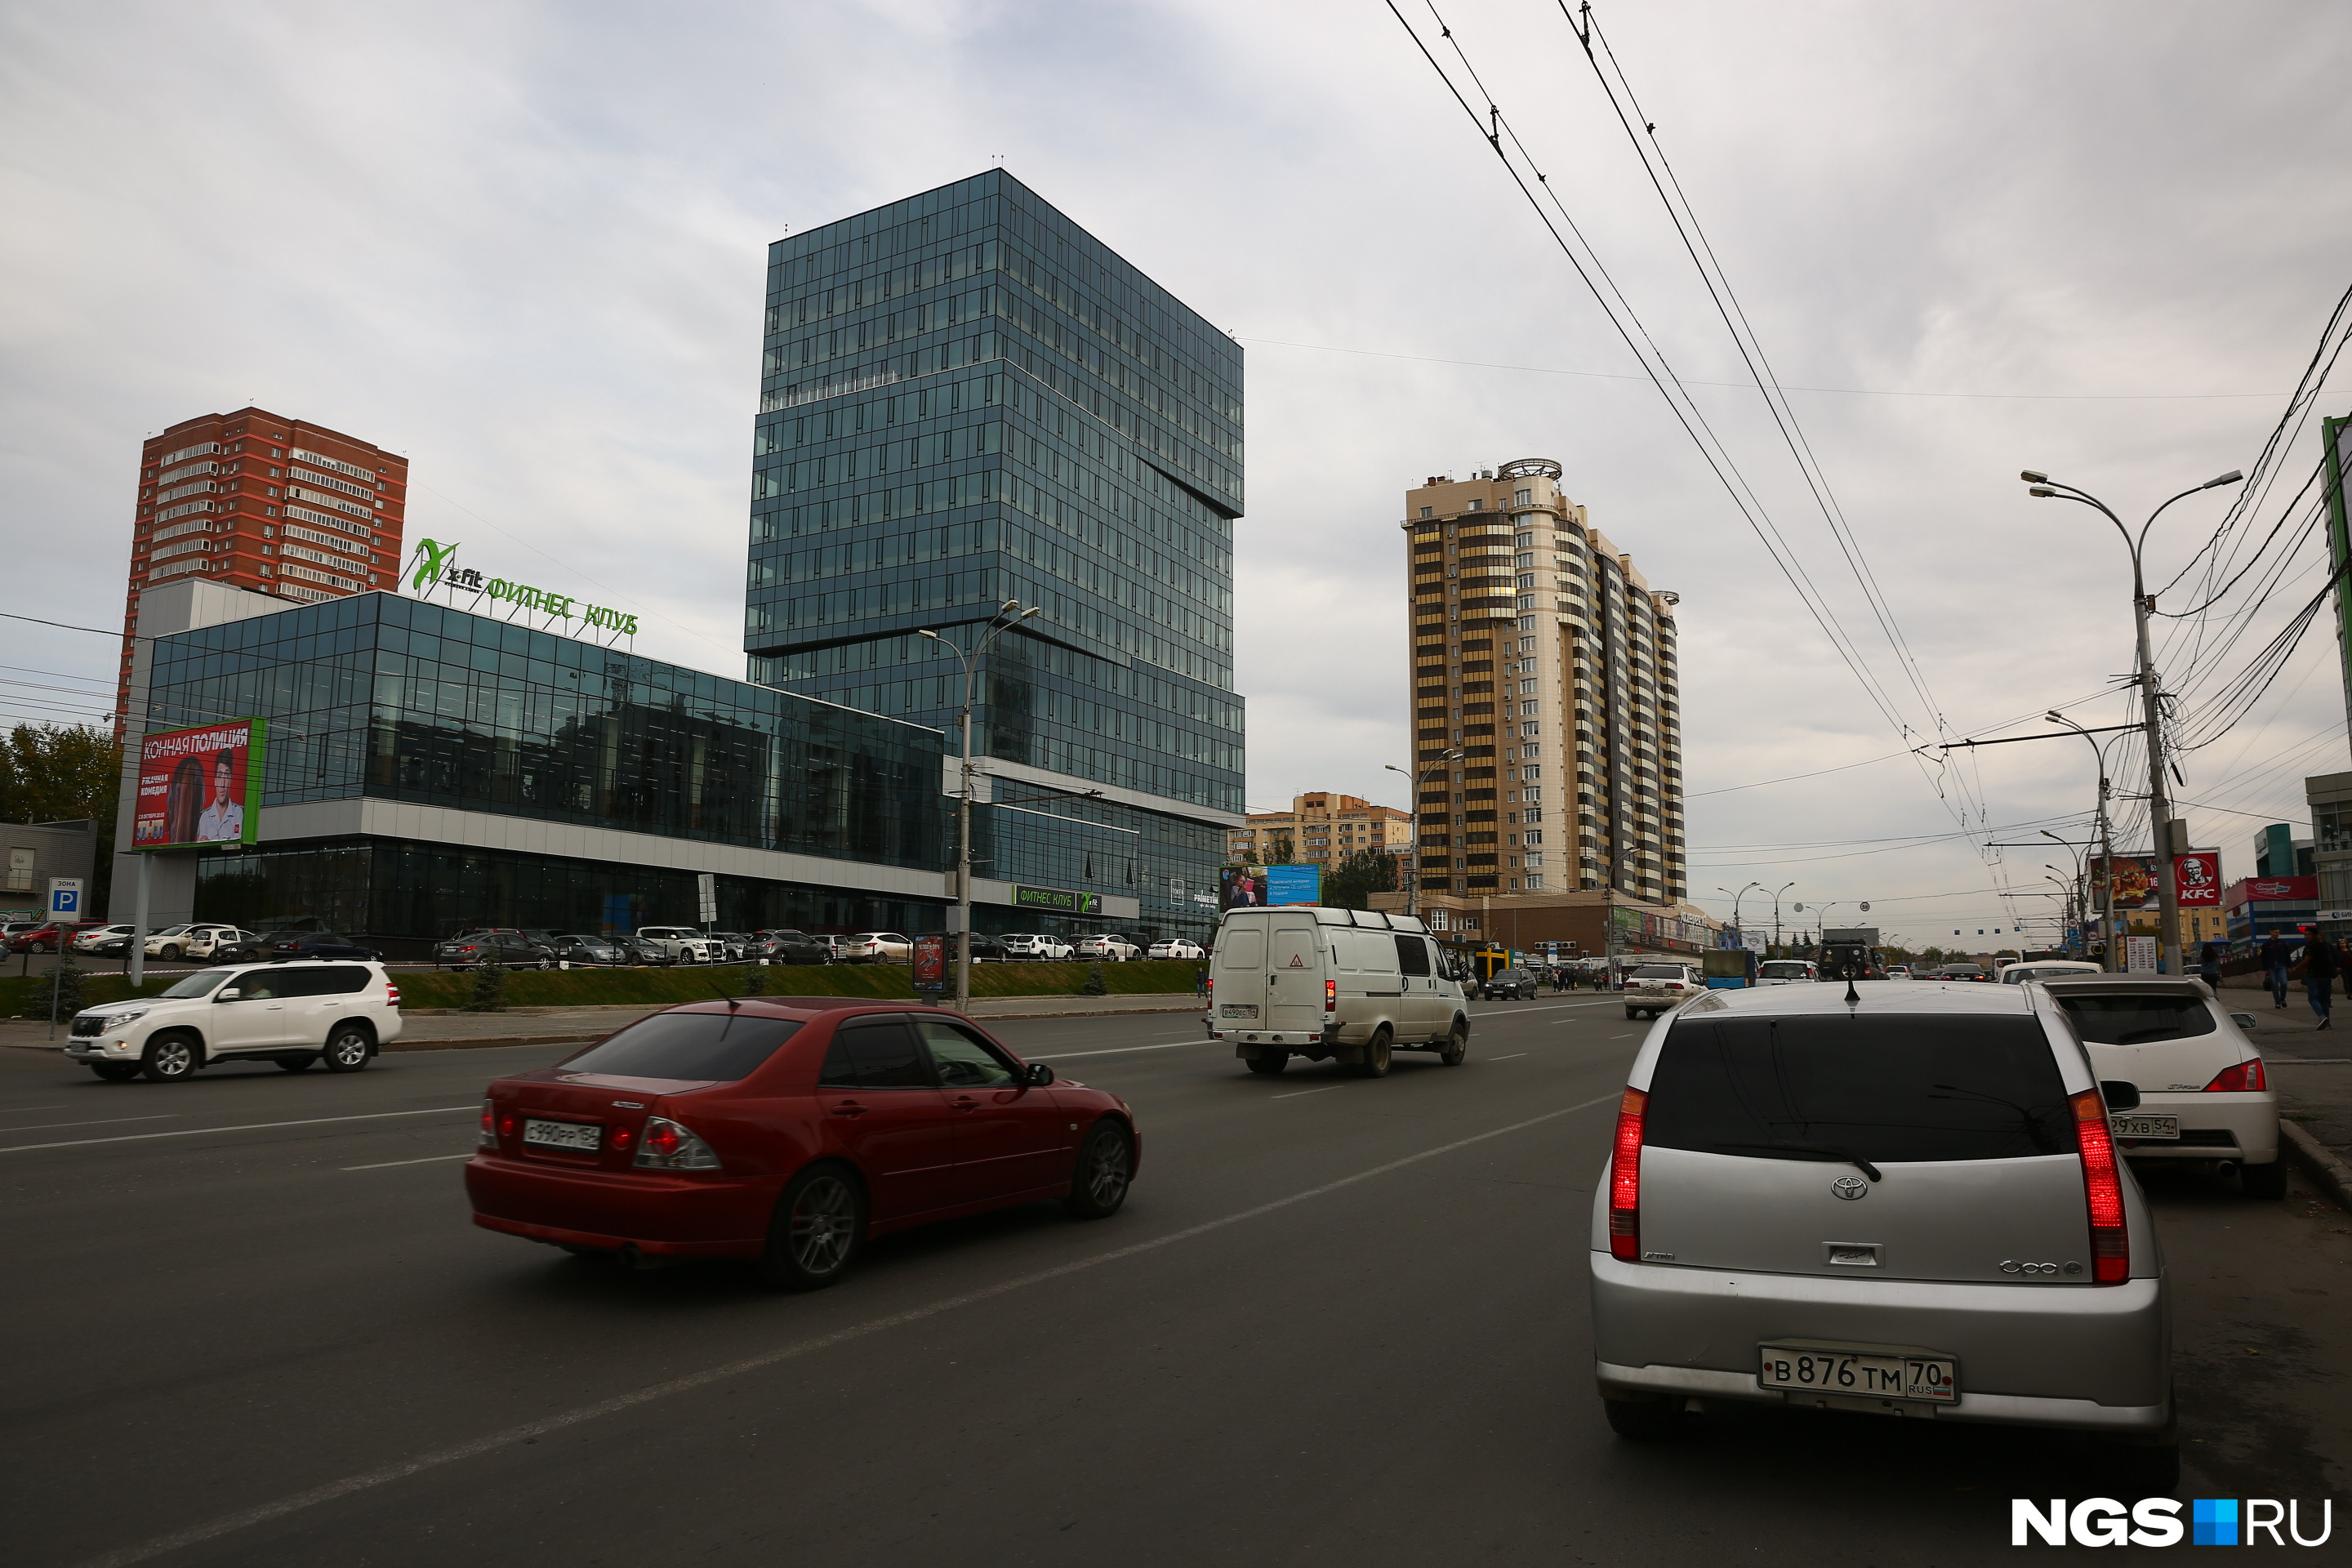 Улица Кирова всё ещё может стать новосибирским даунтауном — бизнес-районом с дорогими офисами и жильём, считают эксперты